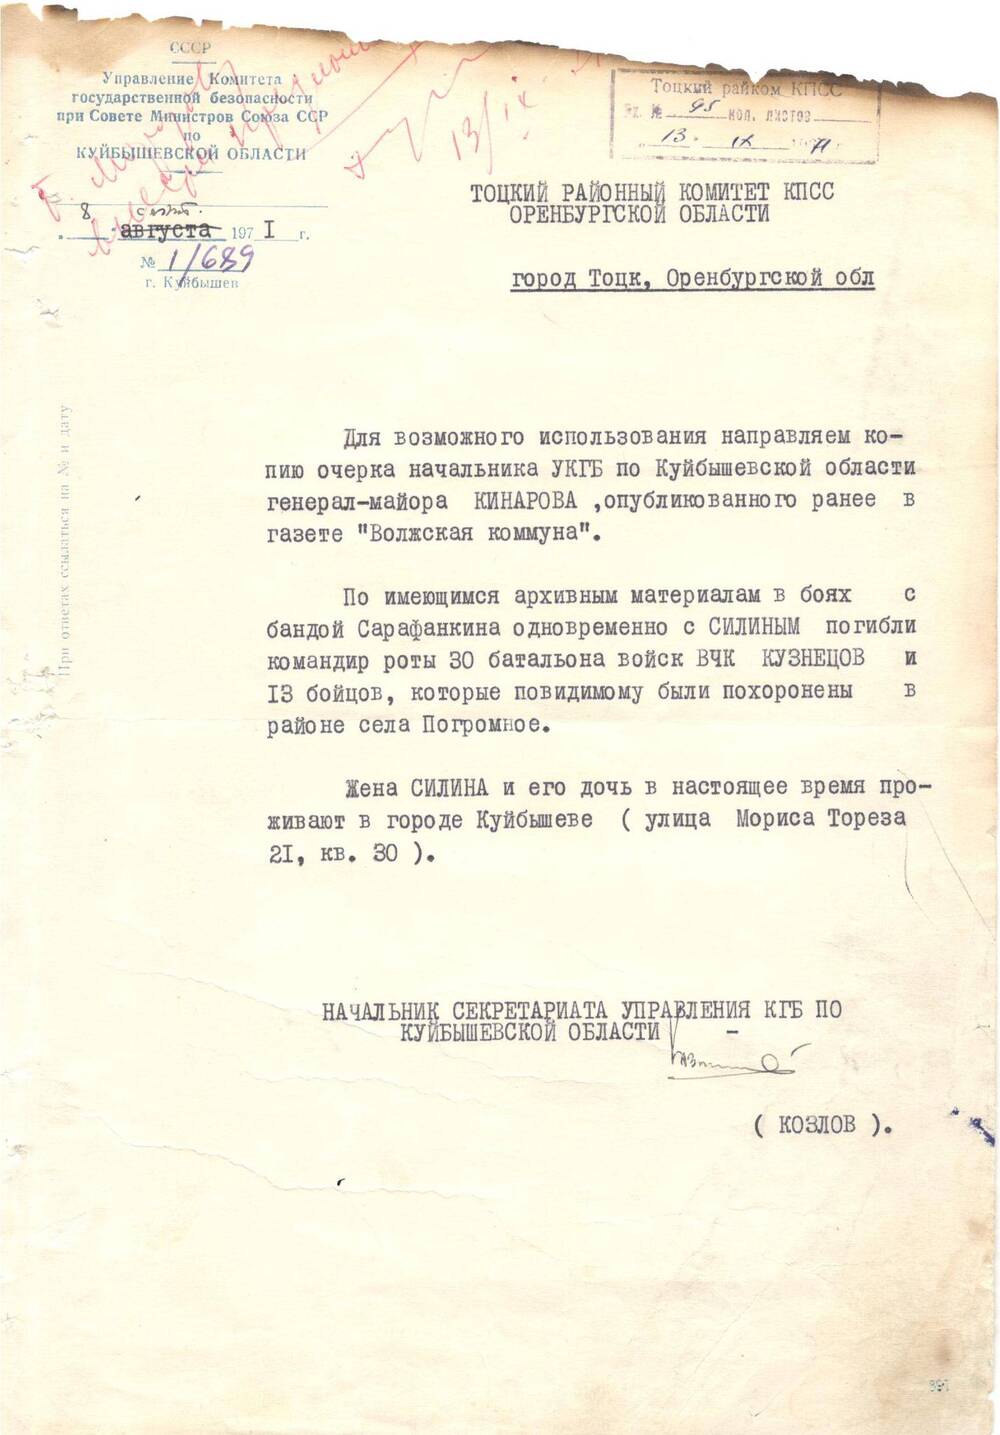 Справка в РК КПСС из Управления КГБ по Куйбышевской области от 08.09.1971 г.